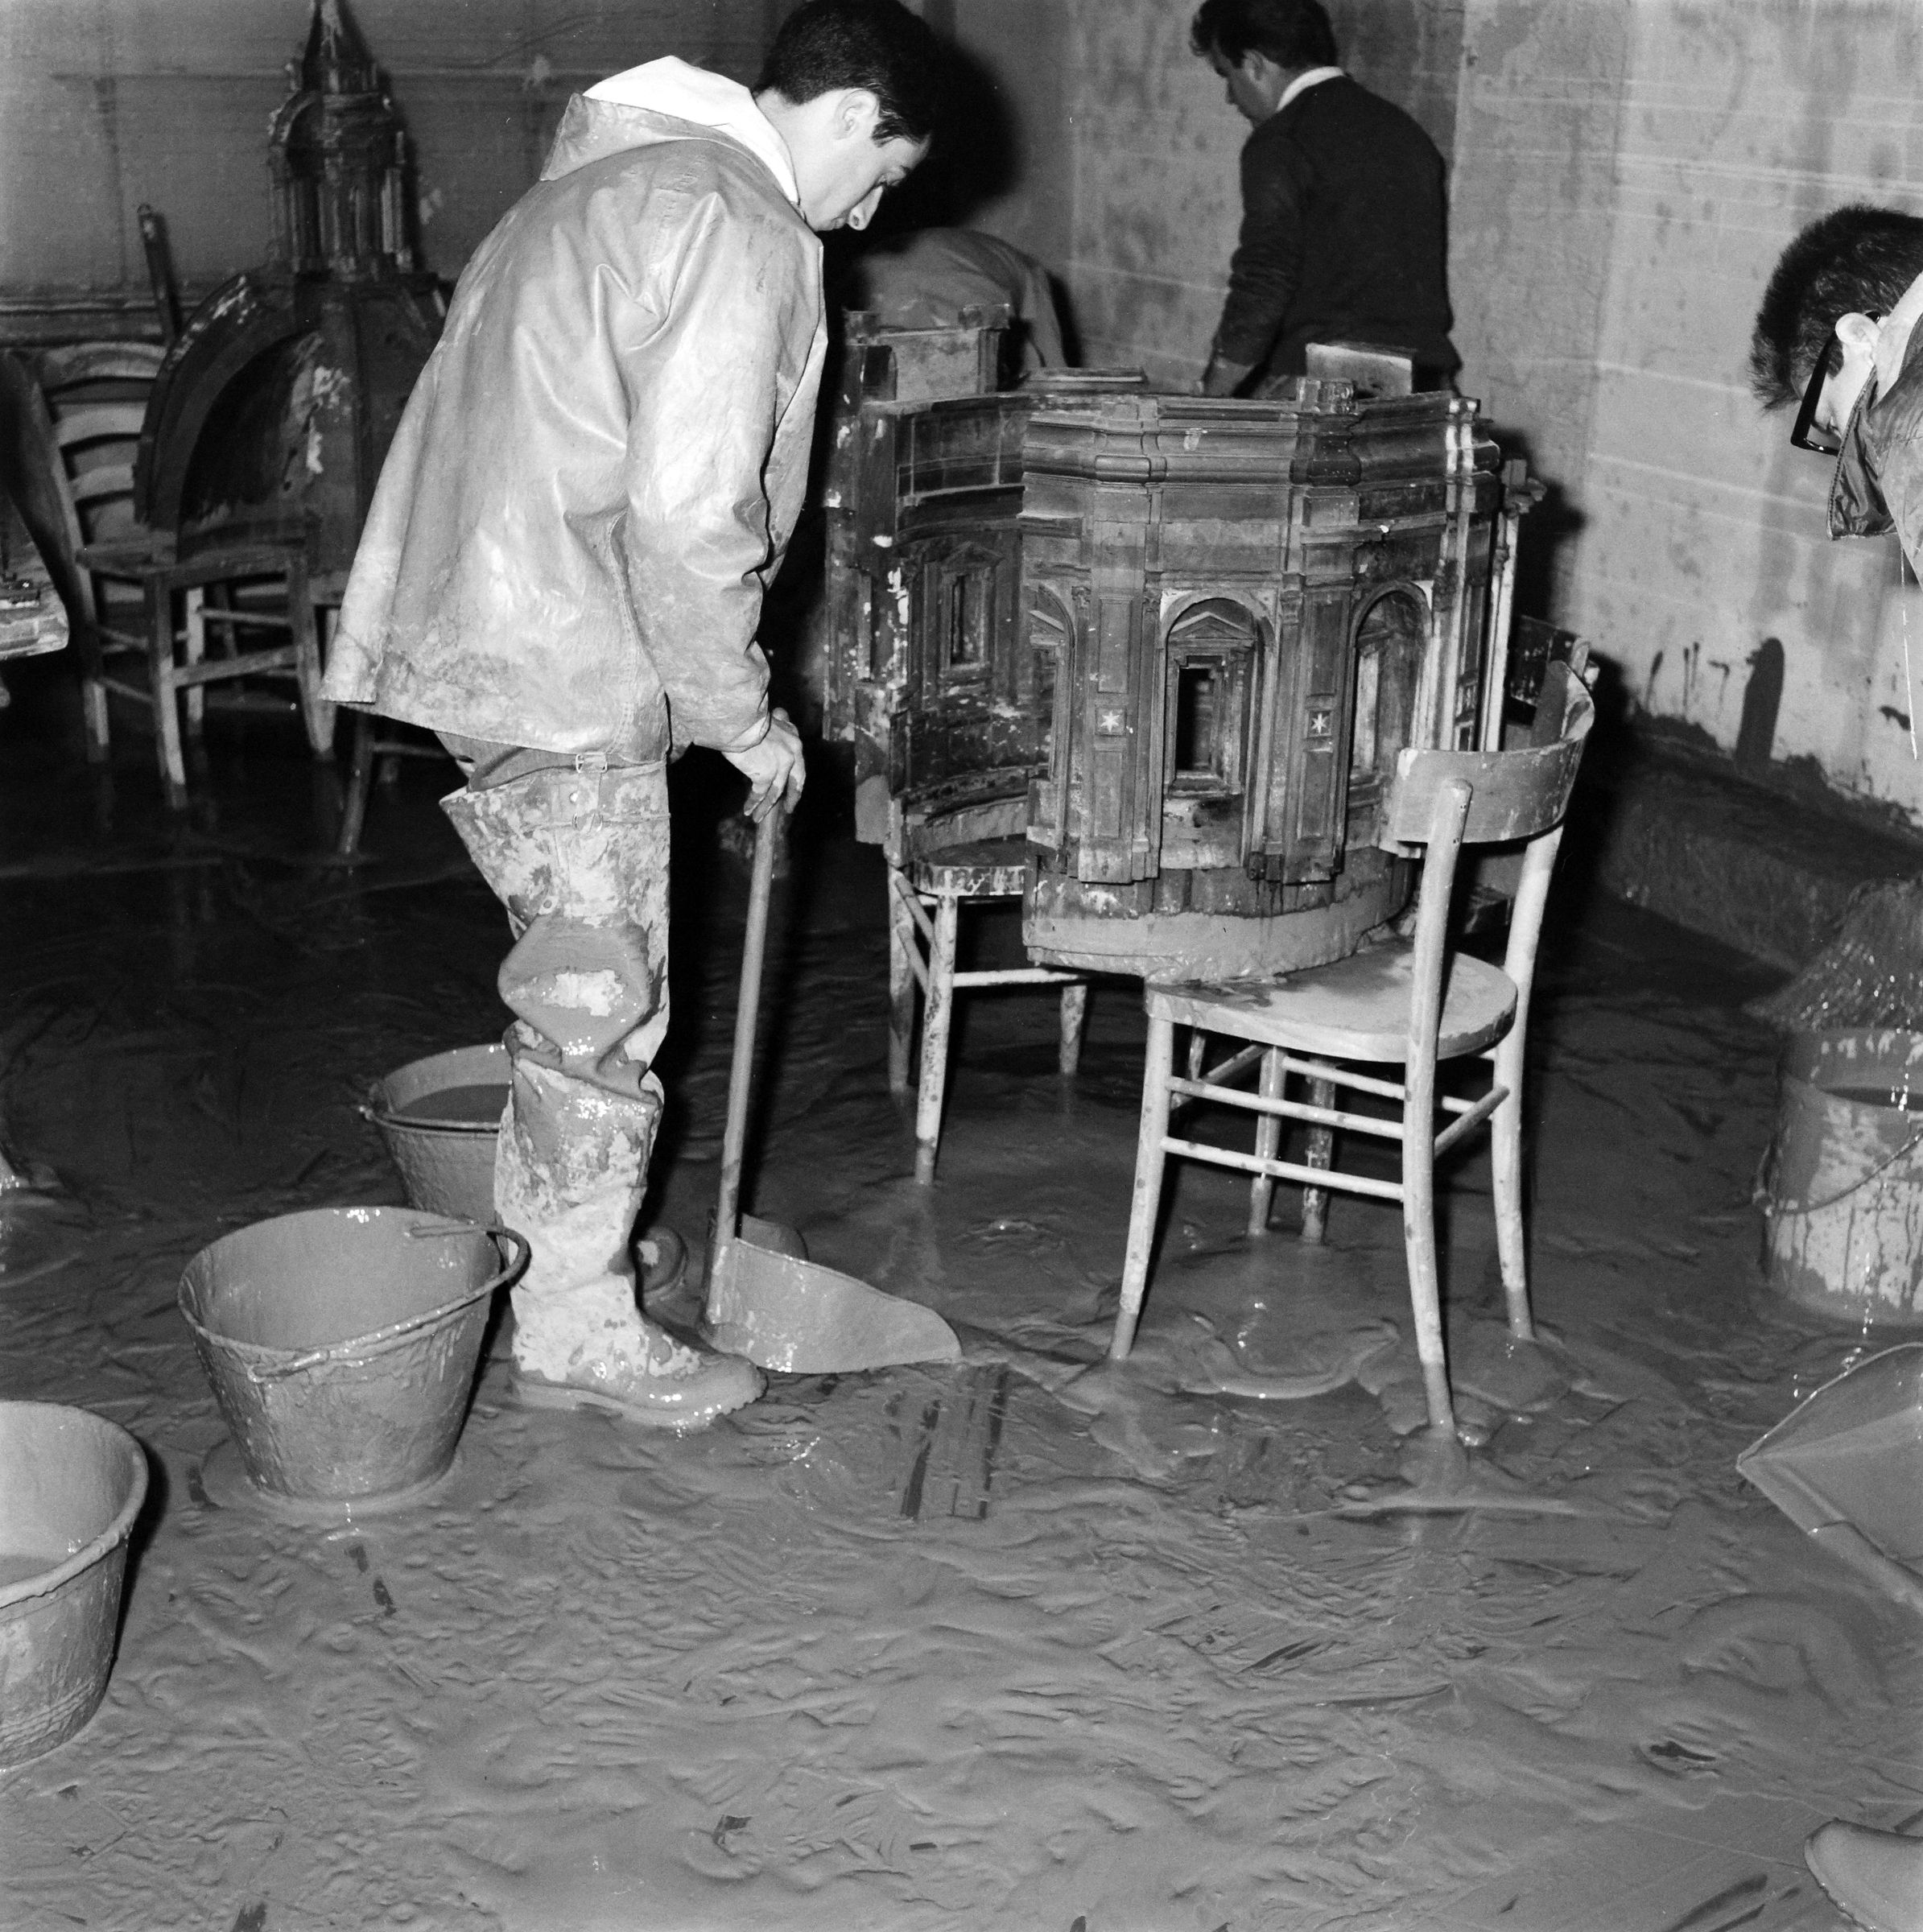 Fotografo non identificato, Firenze - Museo Bardini, modello per la chiesa di S. Firenze, 1966, gelatina ai sali d'argento, 6x6cm, N003645